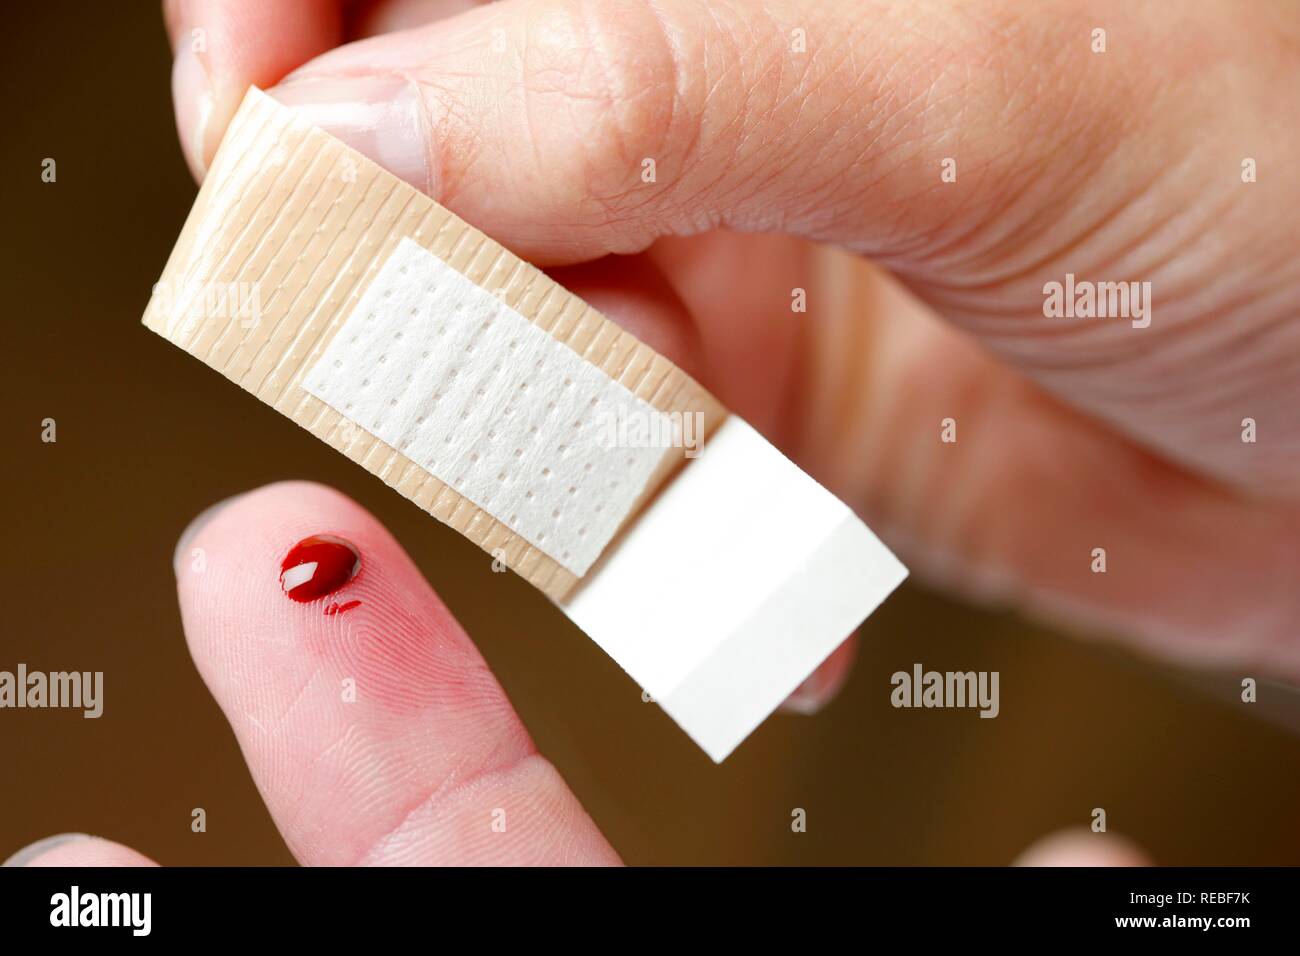 Pflaster, eine kleine Wunde am Finger angewendet Stockfotografie - Alamy